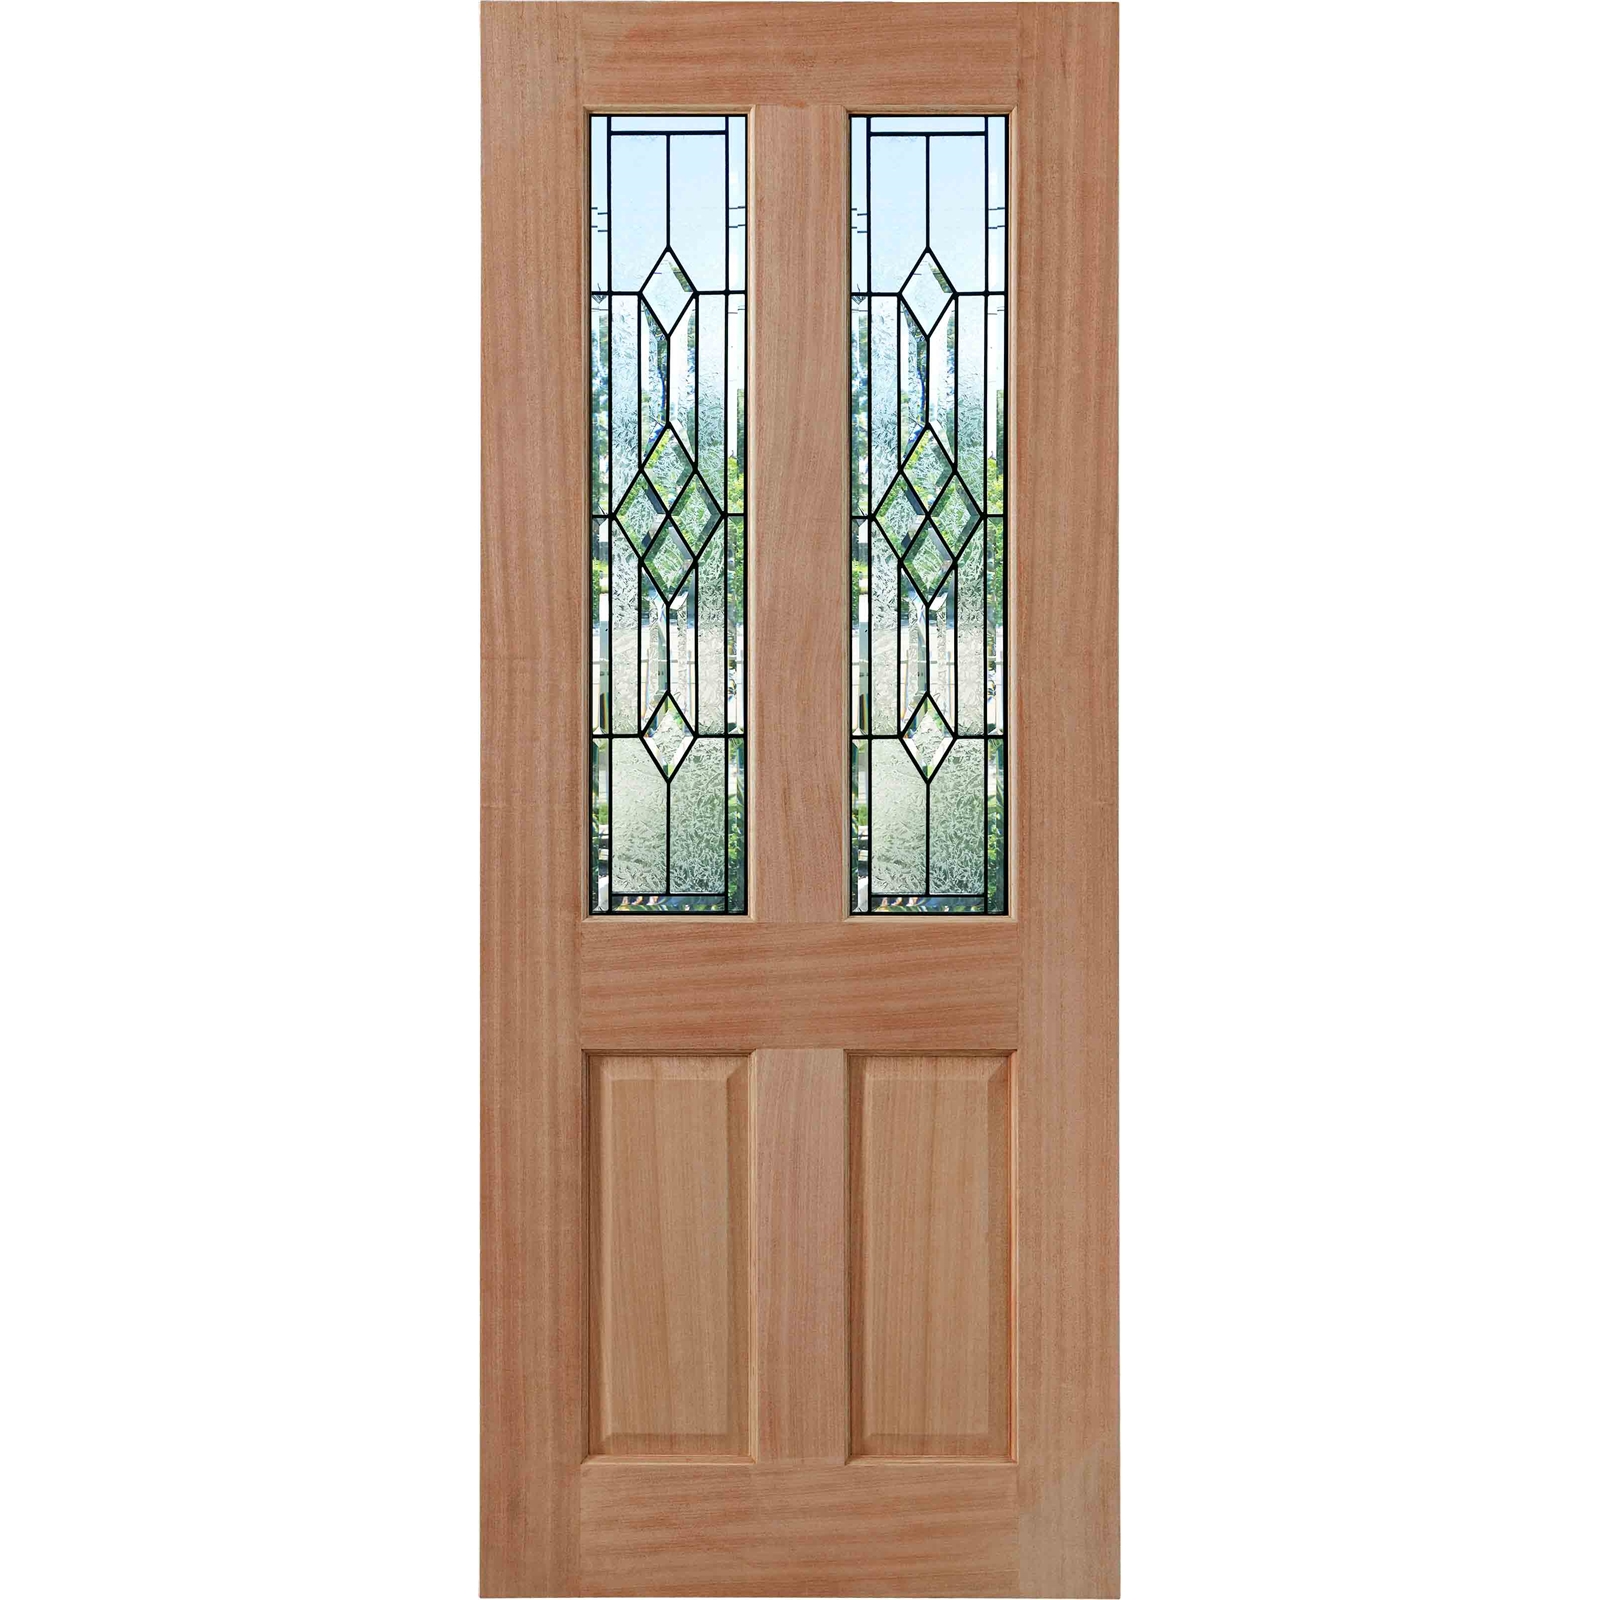 Woodcraft Doors 2040 x 820 x 40mm Cass Entrance Door